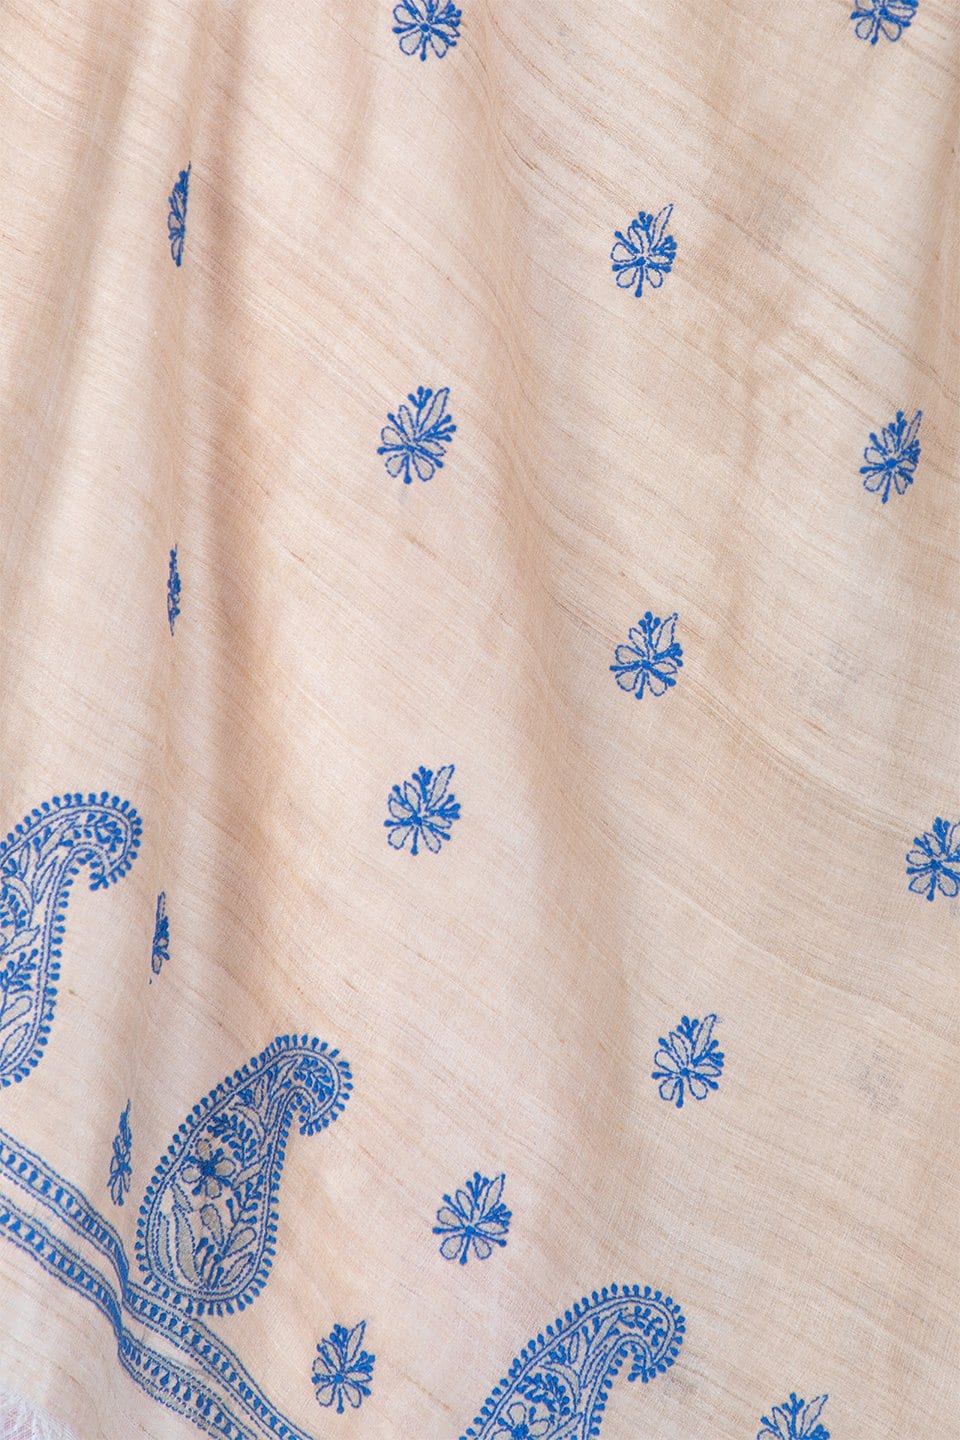 Lucknow Chikan Emporium Duppatta Cotton Blue Thread (Beige) 